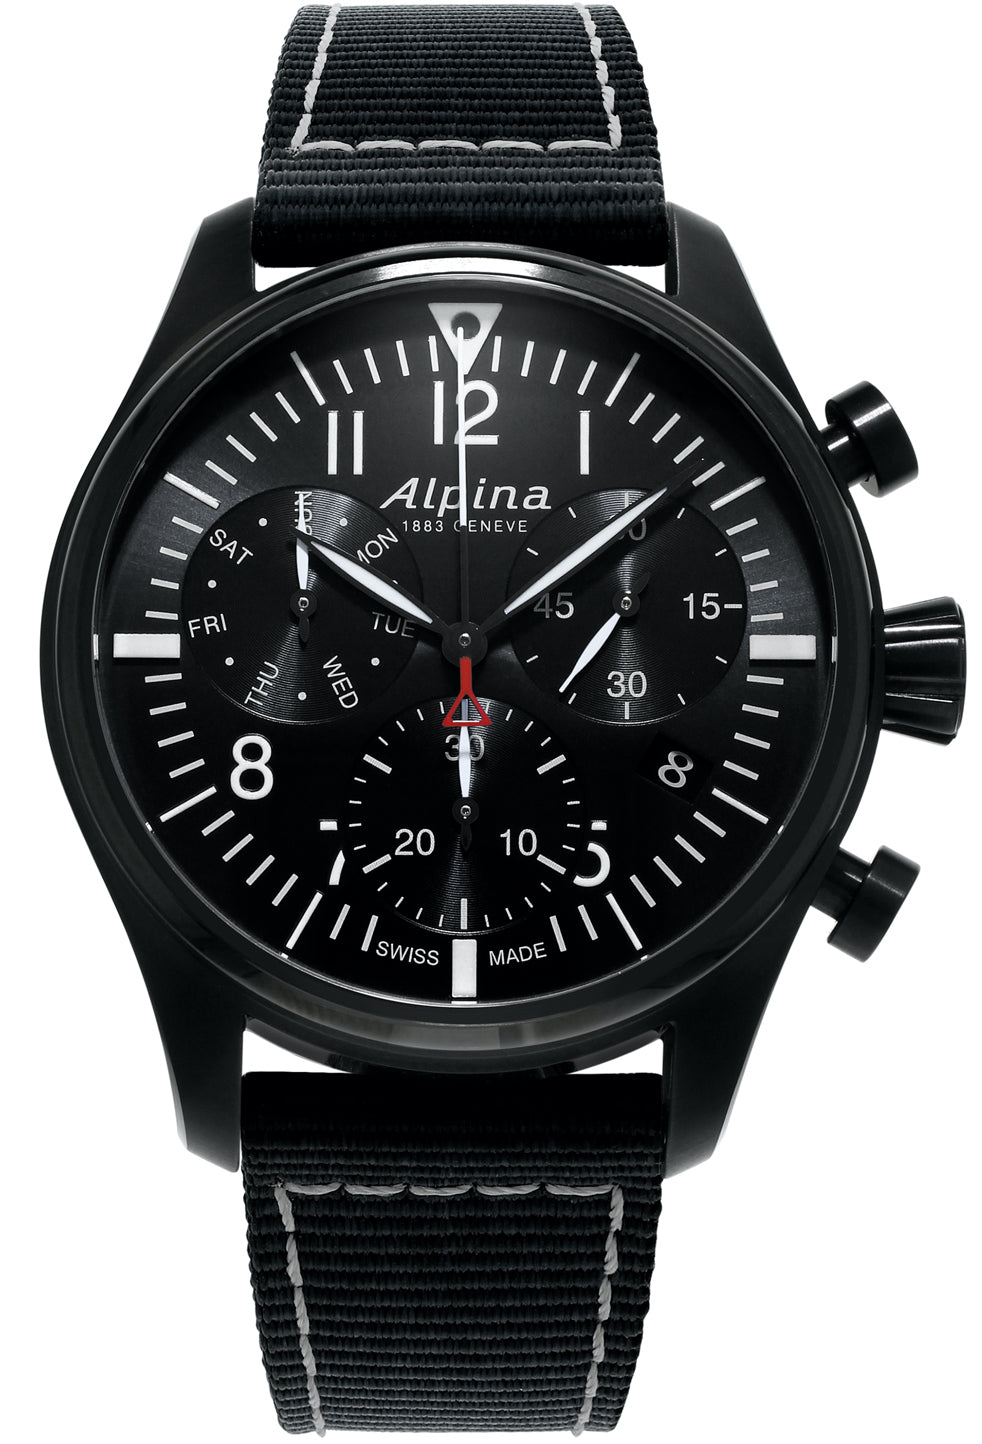 Photos - Wrist Watch Alpina Watch Startimer Pilot Chronograph Quartz D ALP-278 